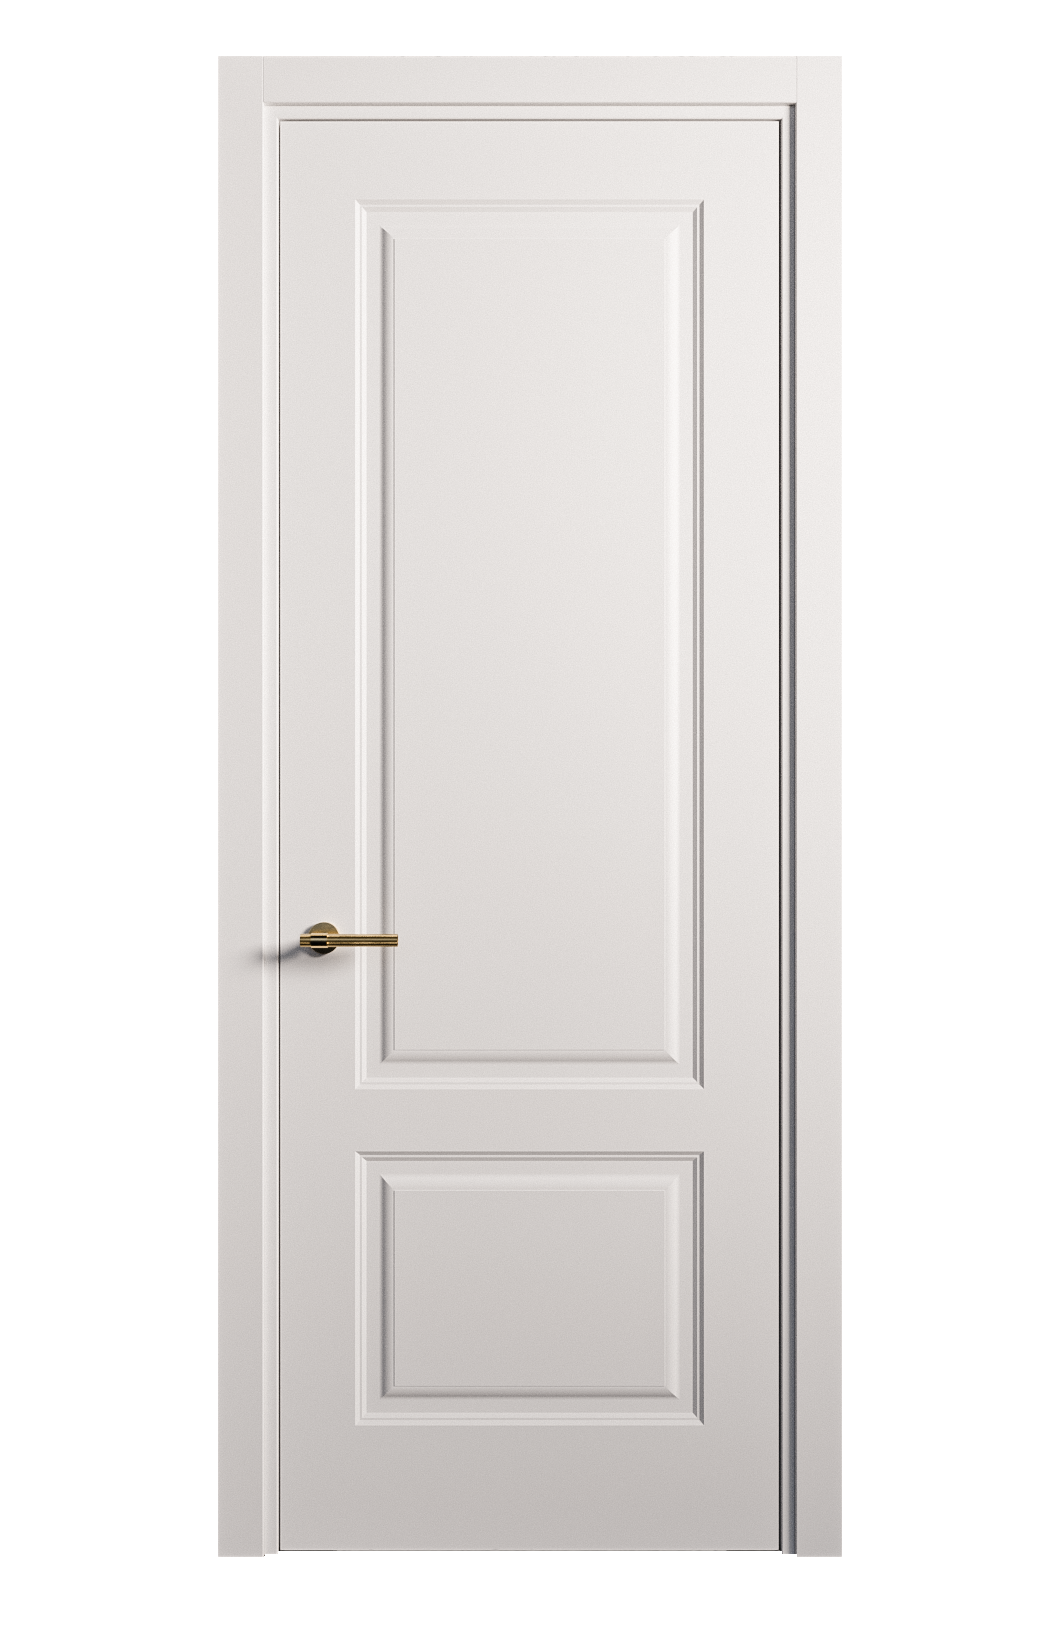 Межкомнатная дверь Вита-1 глухая эмаль ral 9003 26312